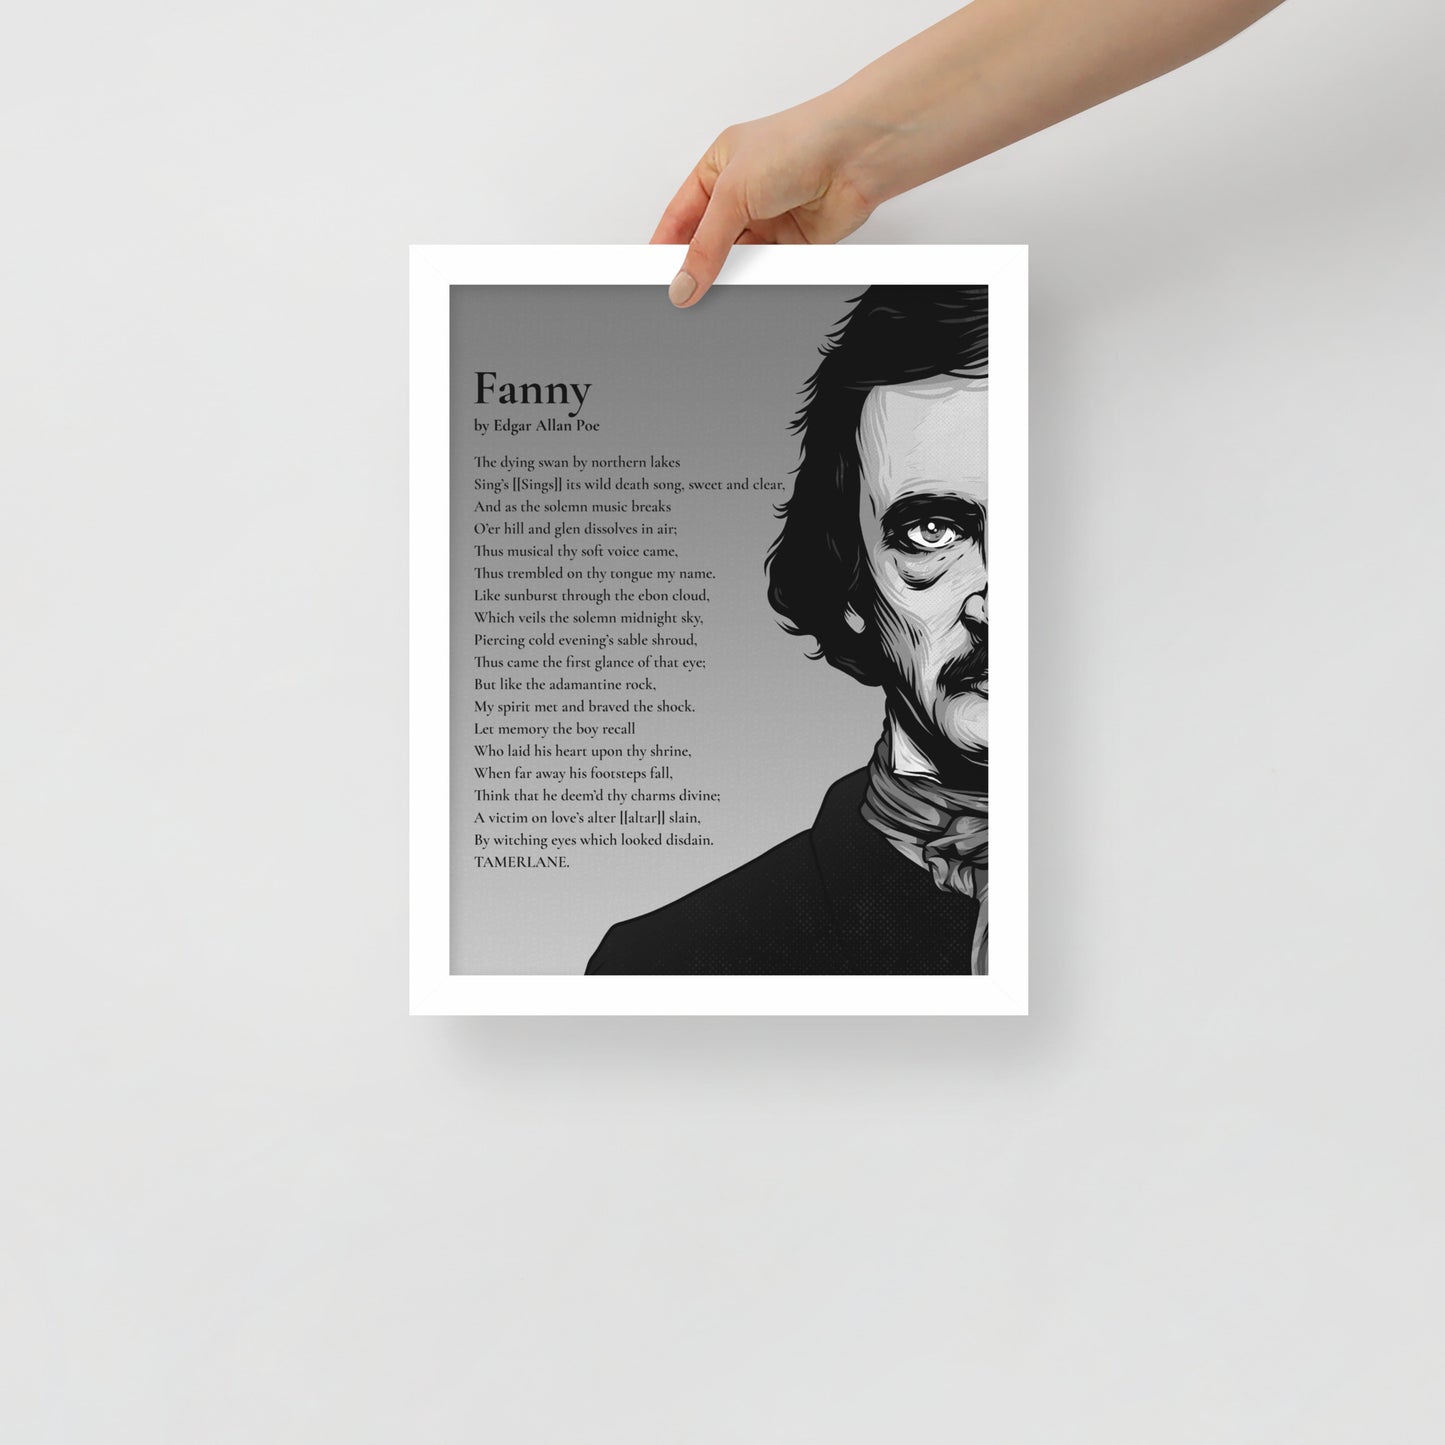 Edgar Allan Poe's 'Fanny' Framed Matted Poster - 11 x 14 White Frame